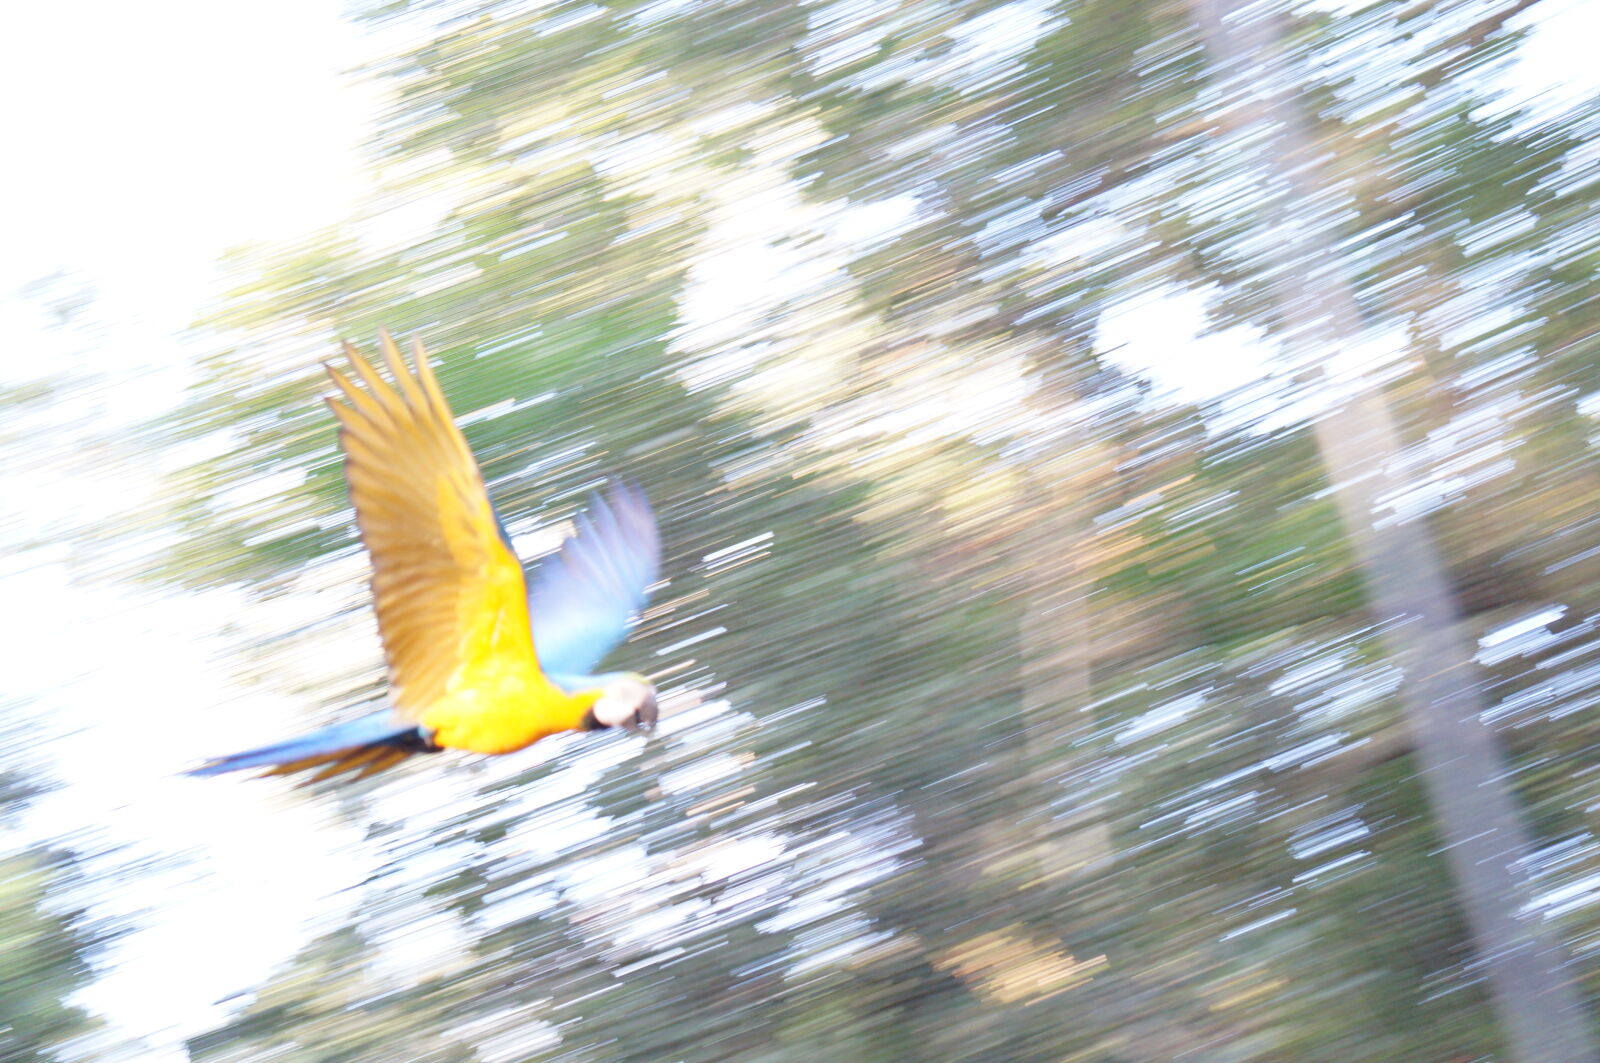 Sony Alpha NEX-F3 + Sony E 55-210mm F4.5-6.3 OSS sample photo. Bird, kite, parrot photography